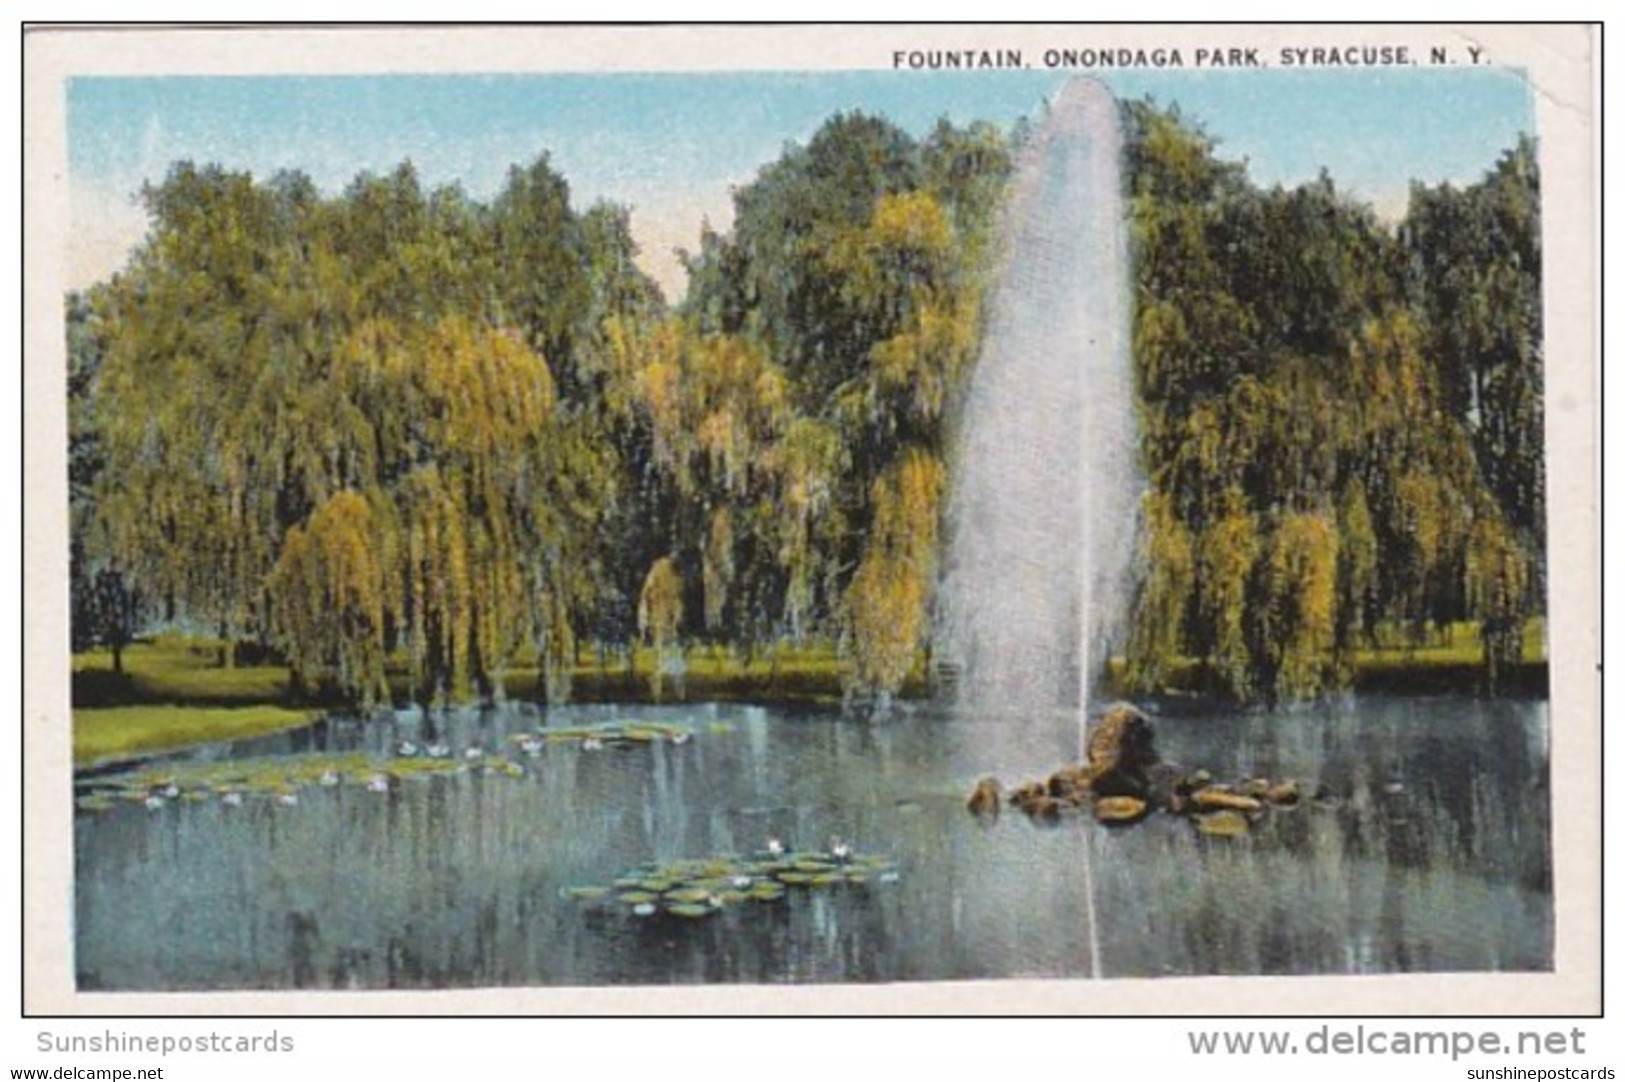 New York Syracuse Fountain In Onondaga Park Curteich - Syracuse